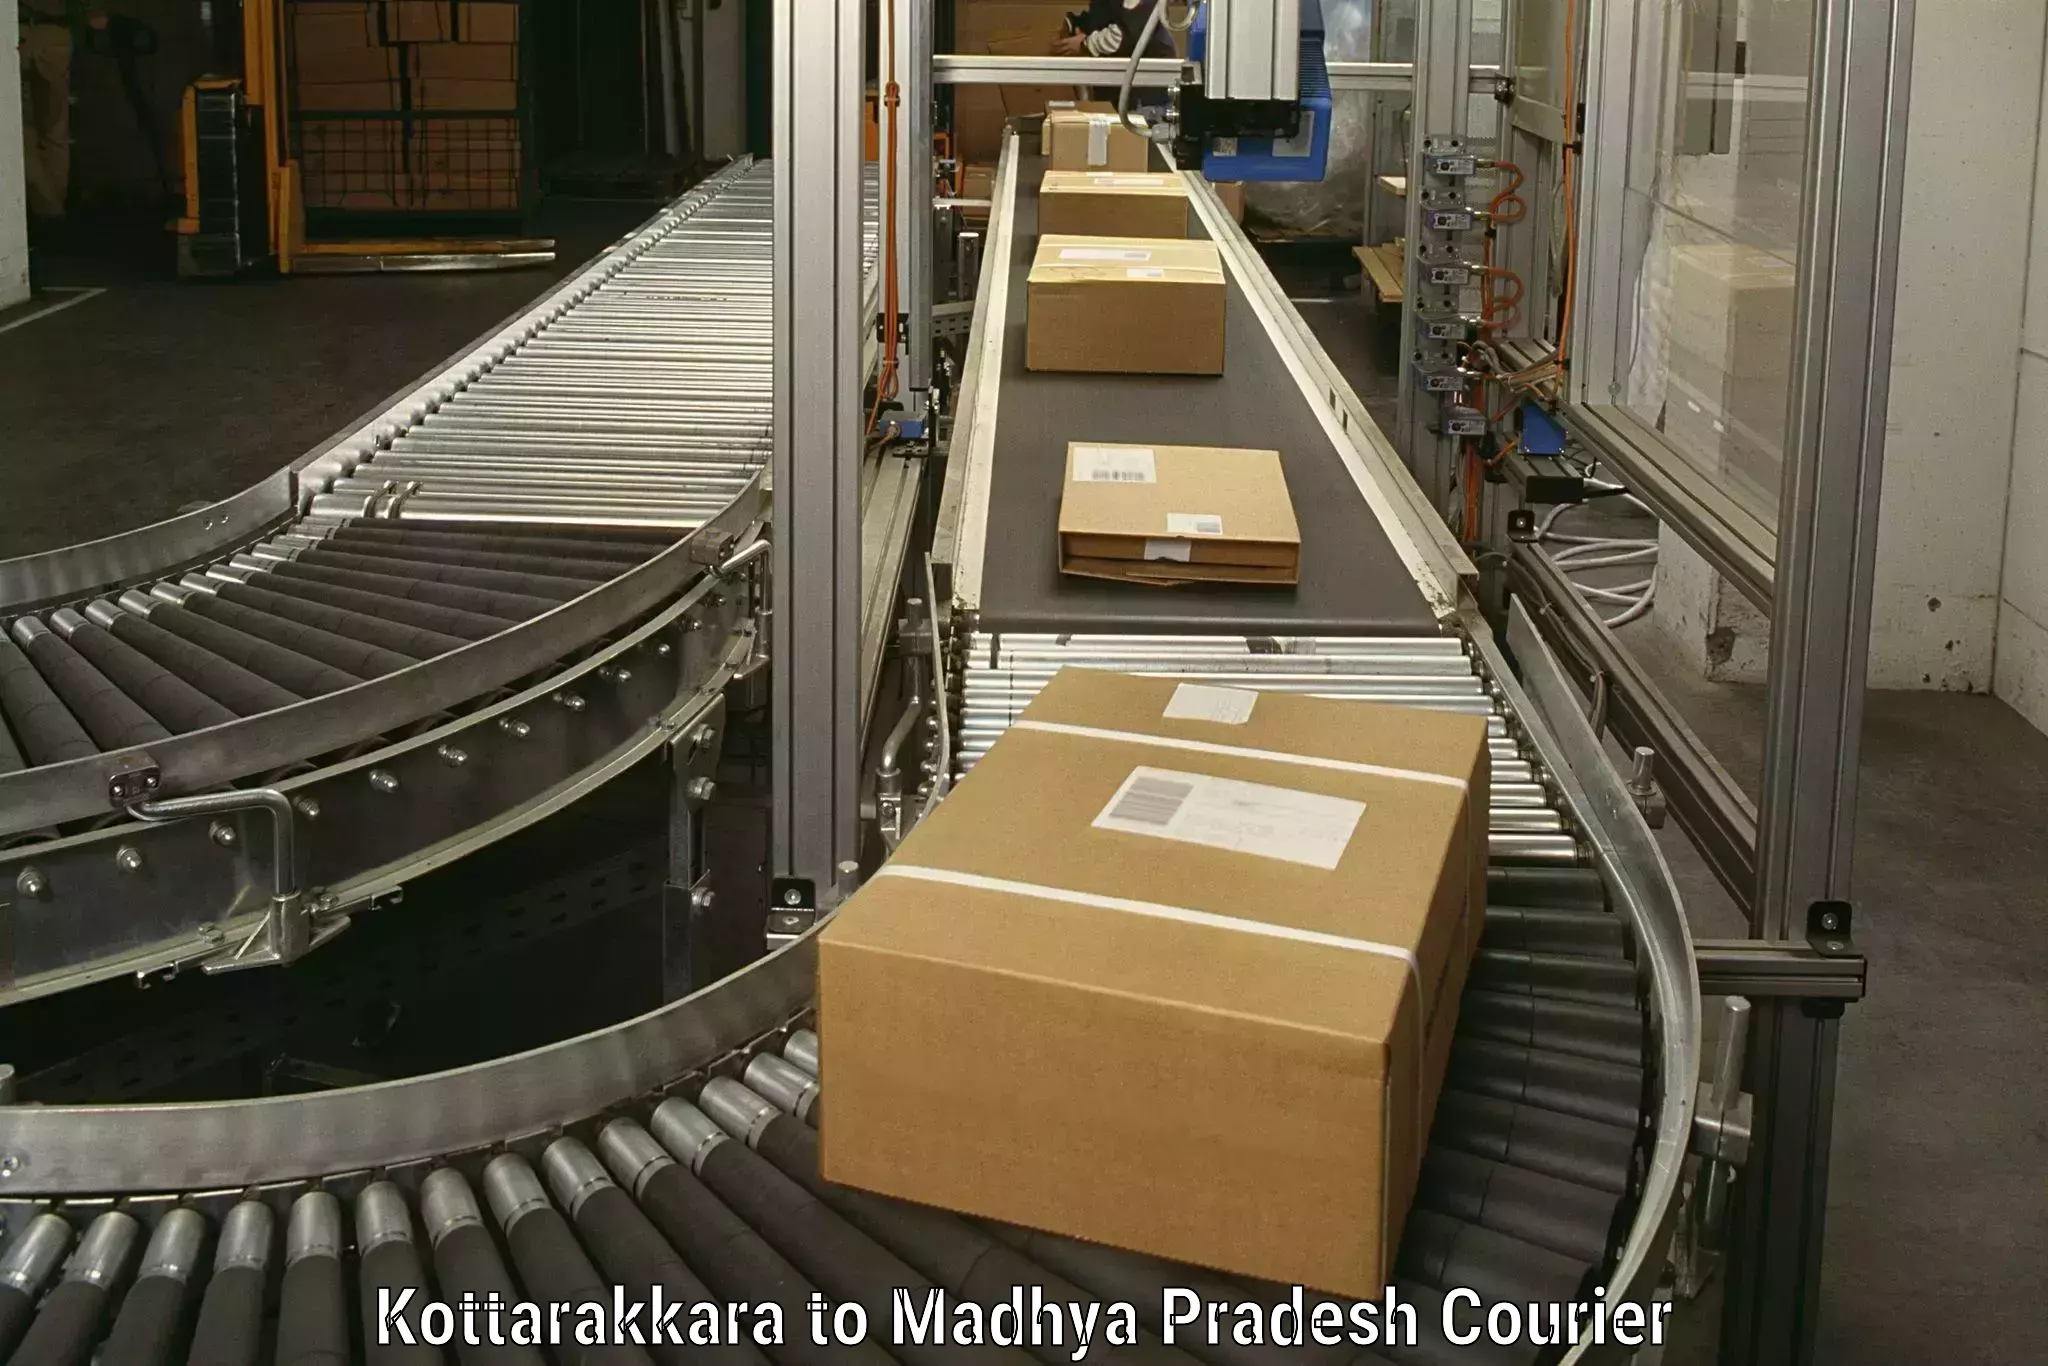 Furniture moving experts Kottarakkara to Mundi